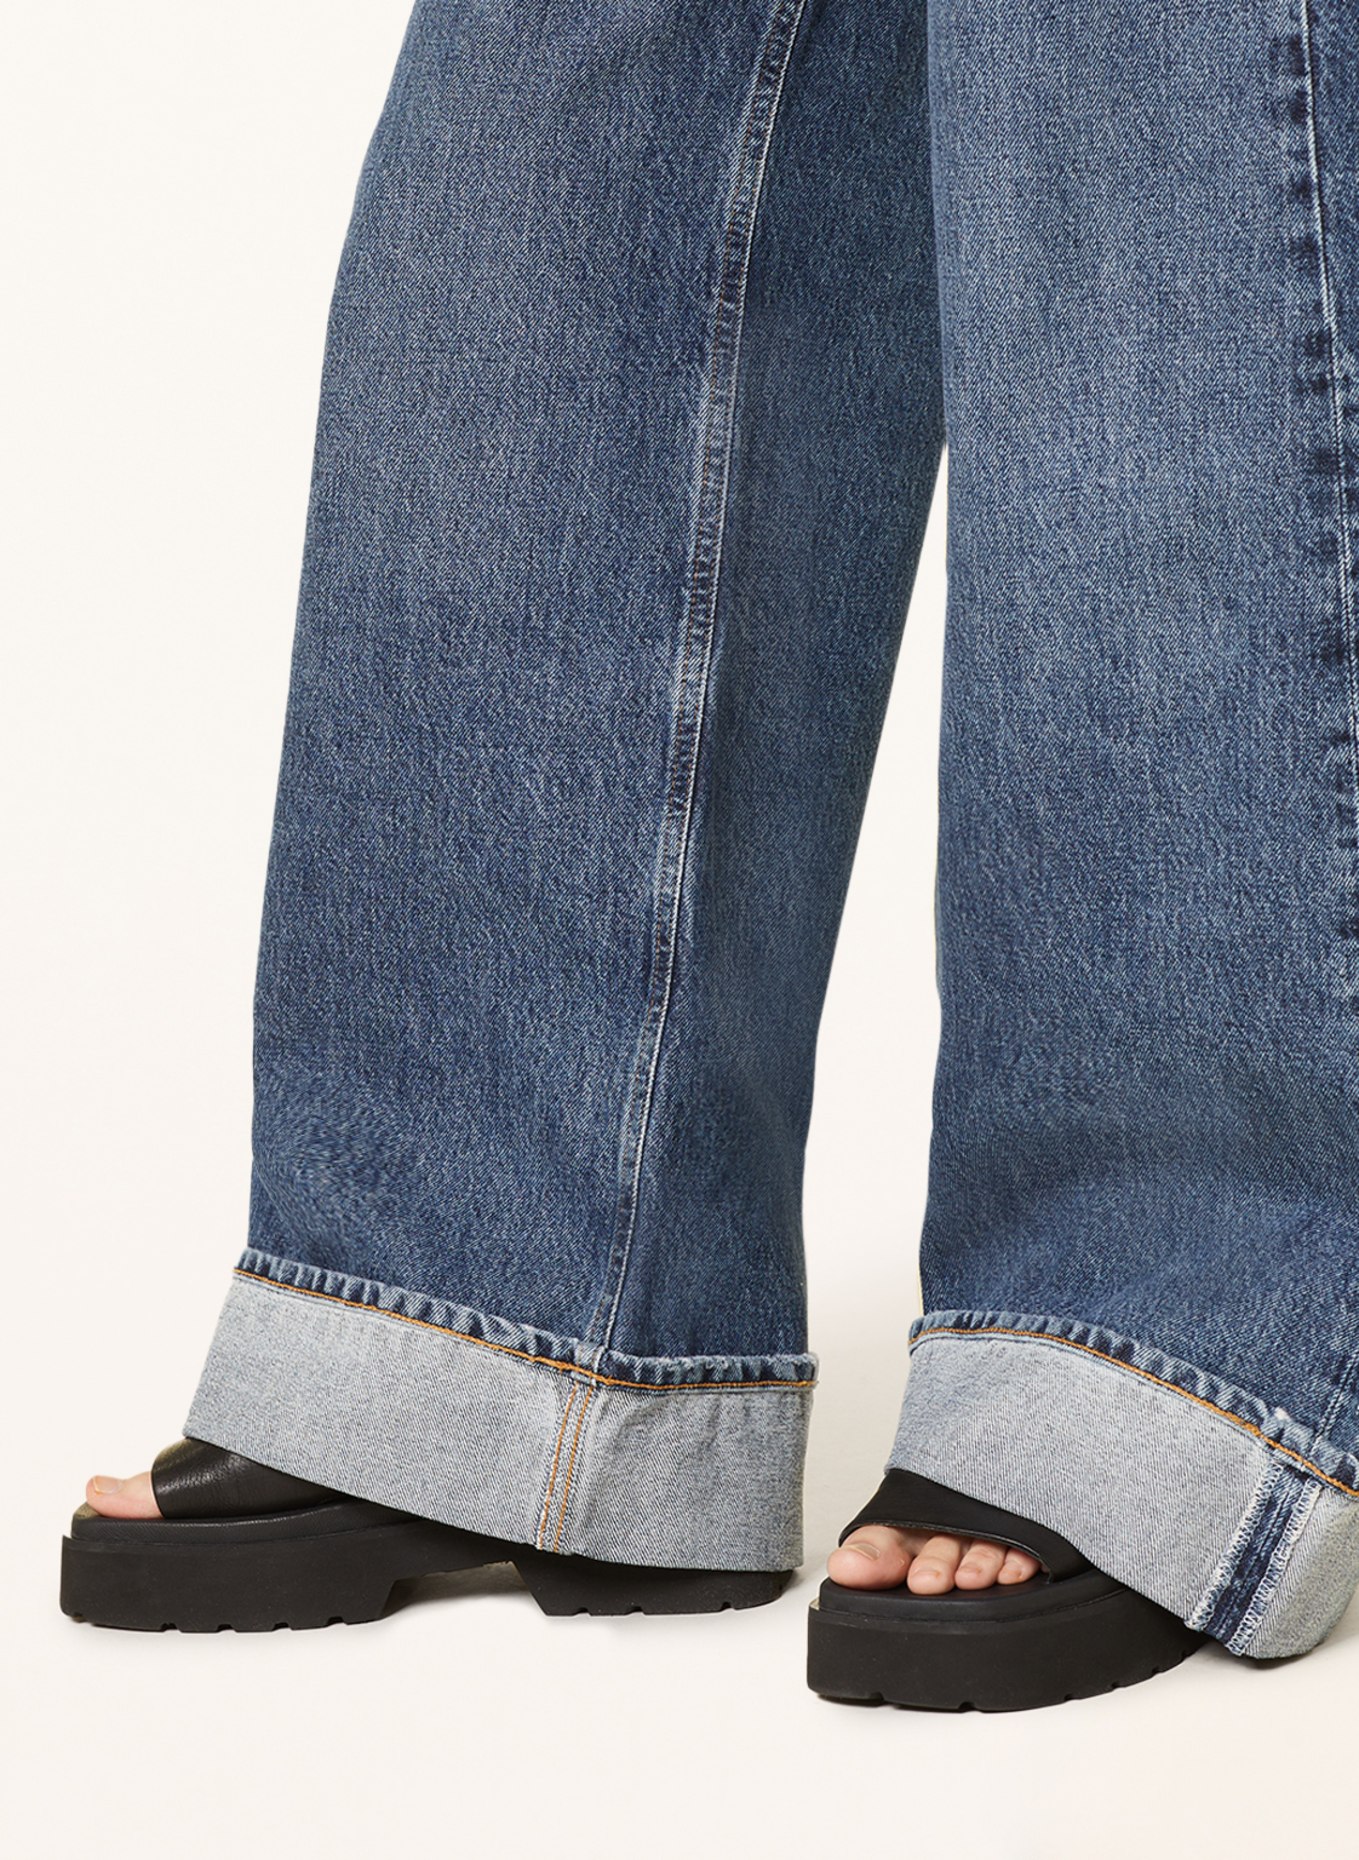 AGOLDE Flared jeans DAME JEAN, Color: Control dk ind (Image 5)